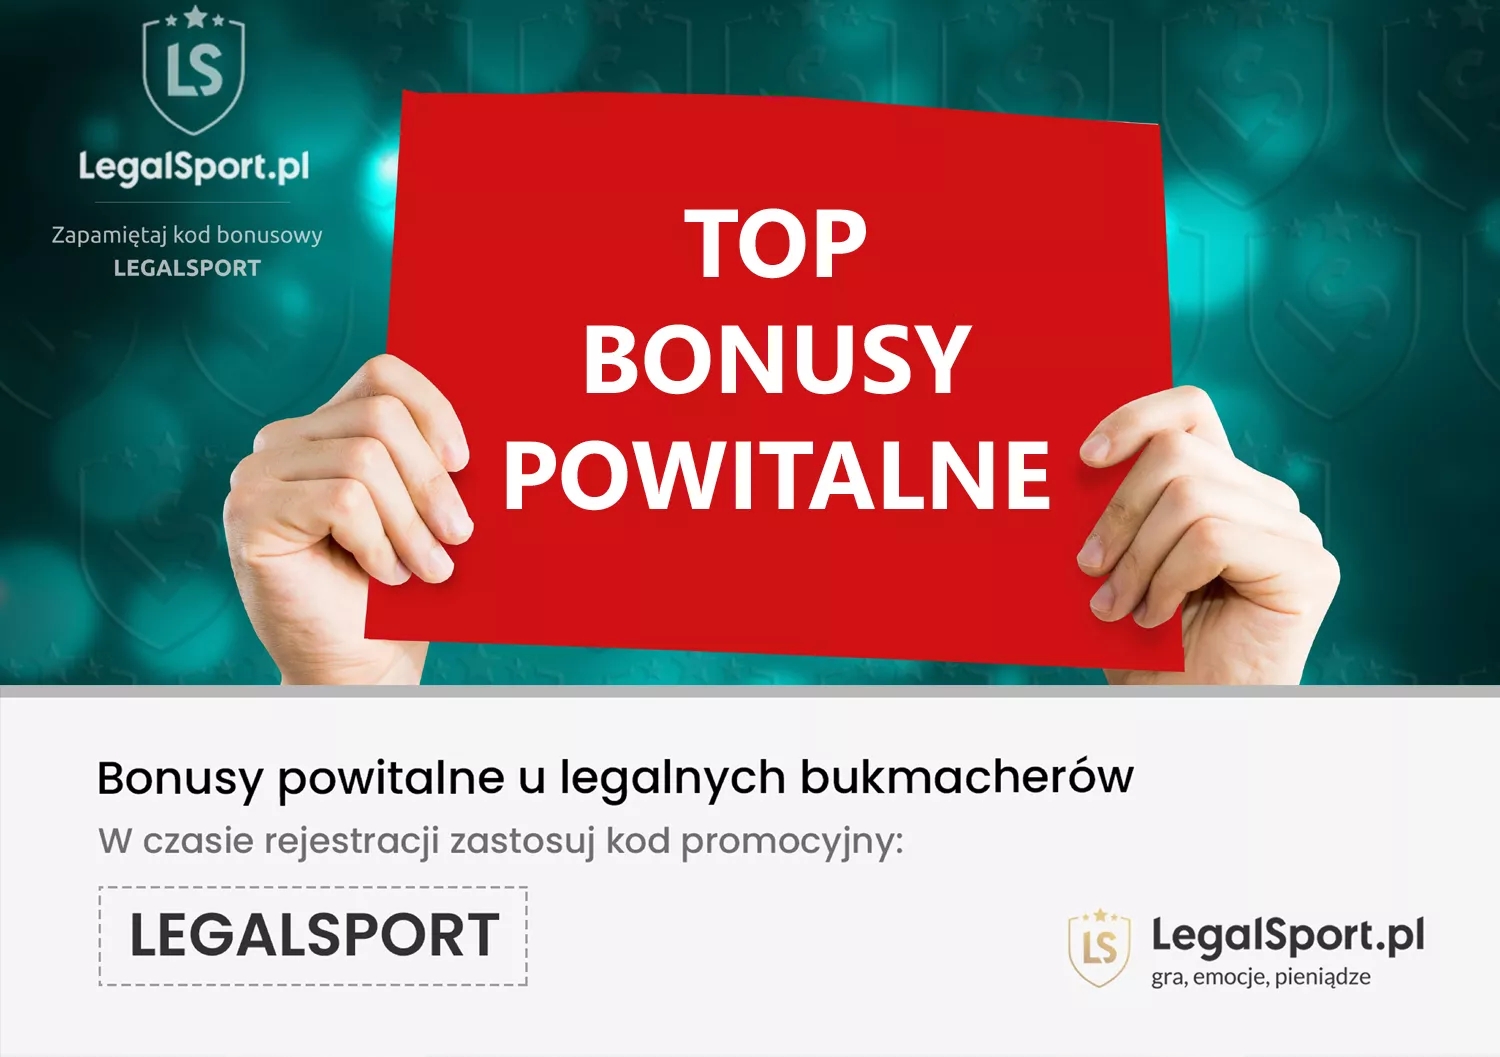 Bonusy dla nowych graczy z kodem VIP u legalnych polskich bukmacherów - zdjęcie do tekstu